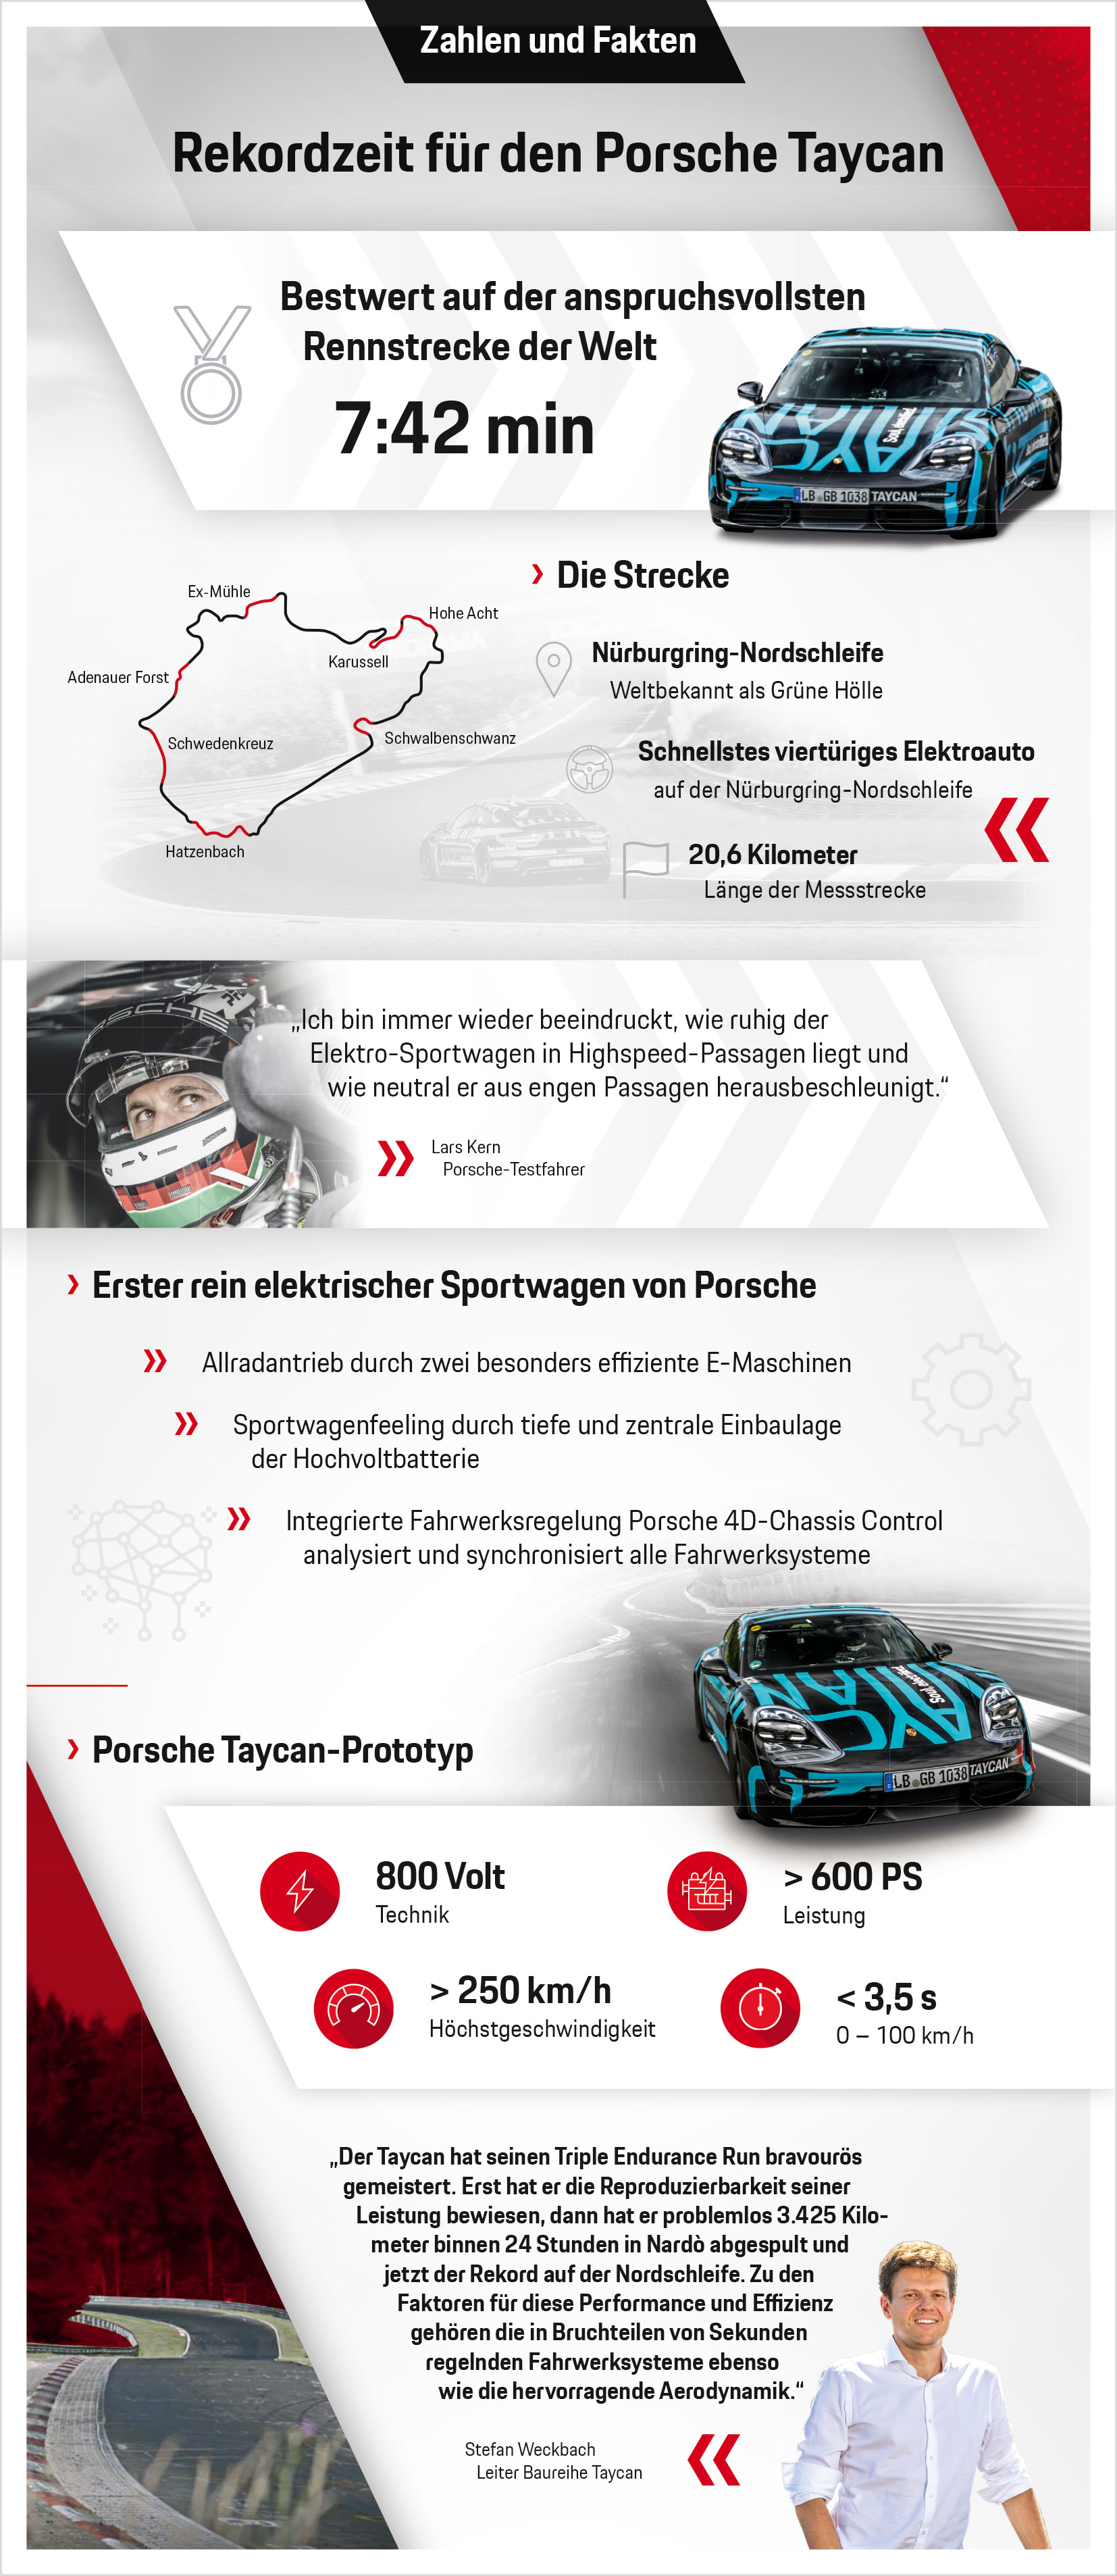 Rekordzeit für den Porsche Taycan, Infografik, 2019, Porsche AG